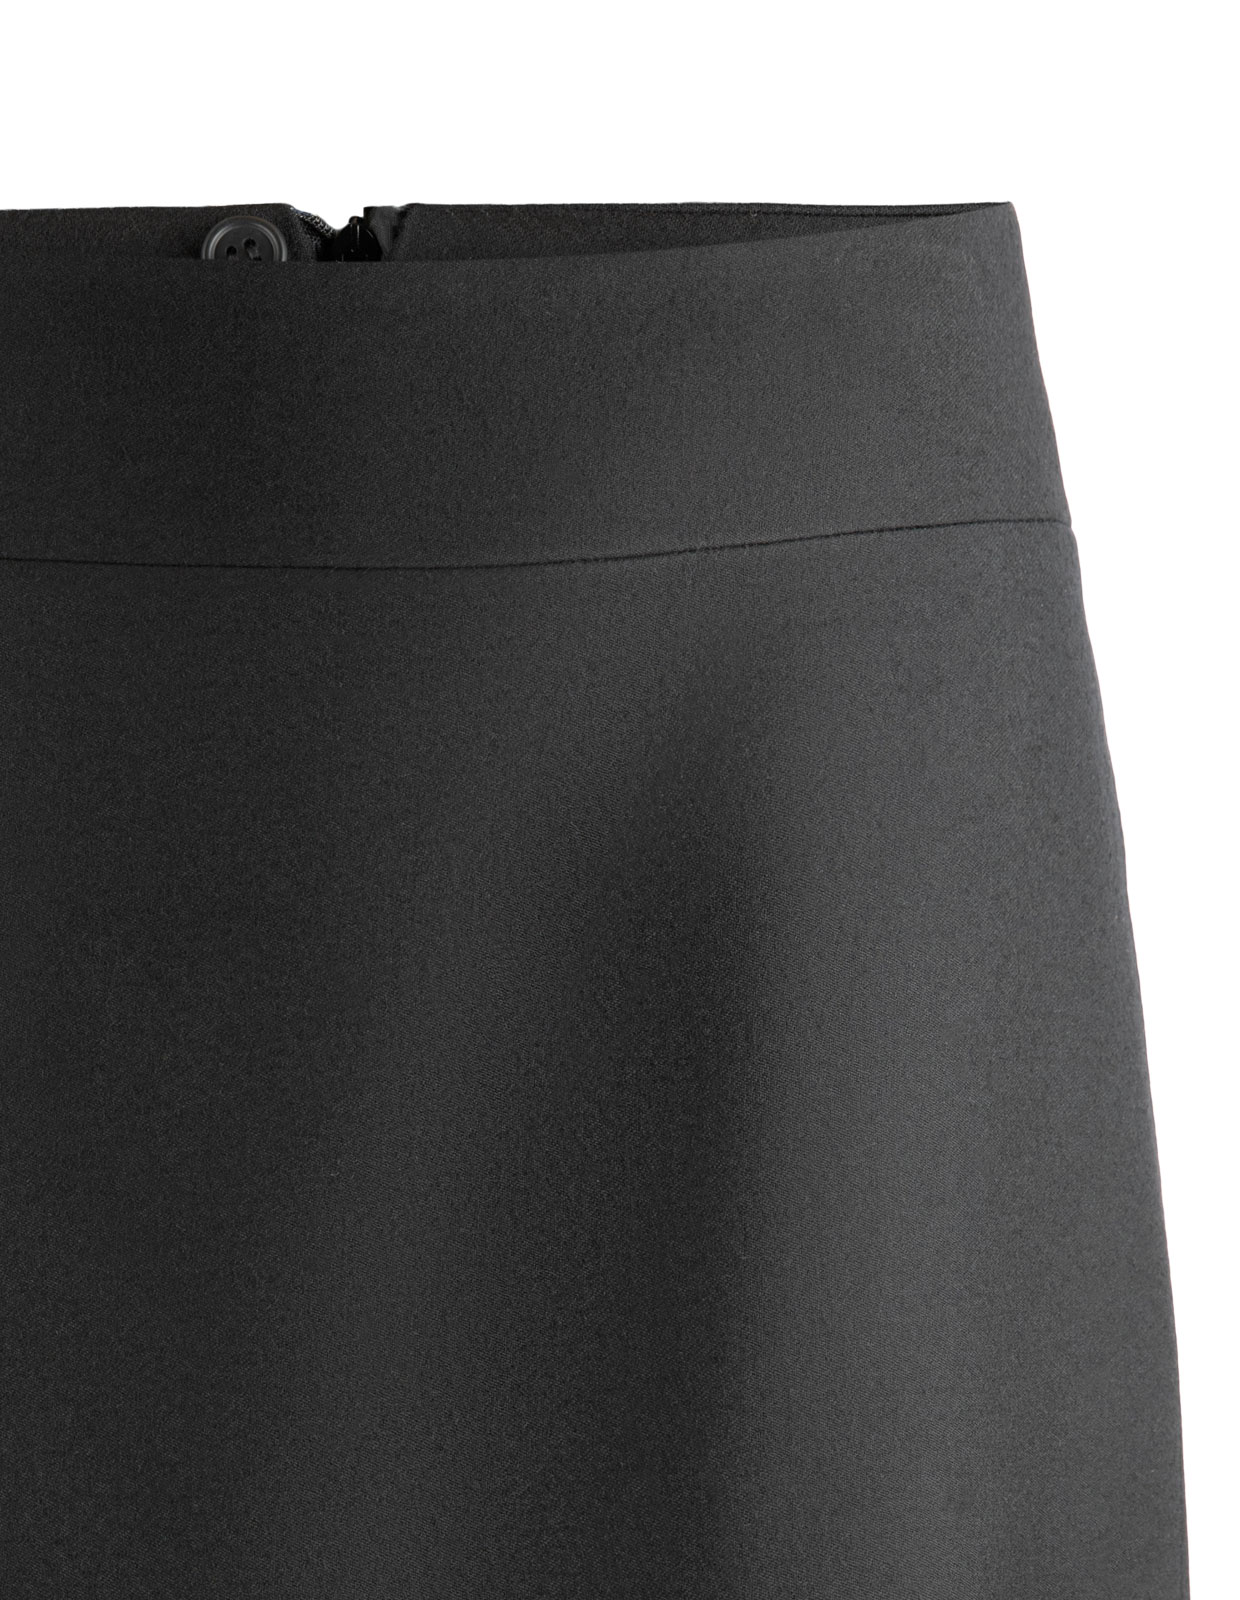 Skirt in Wool Black